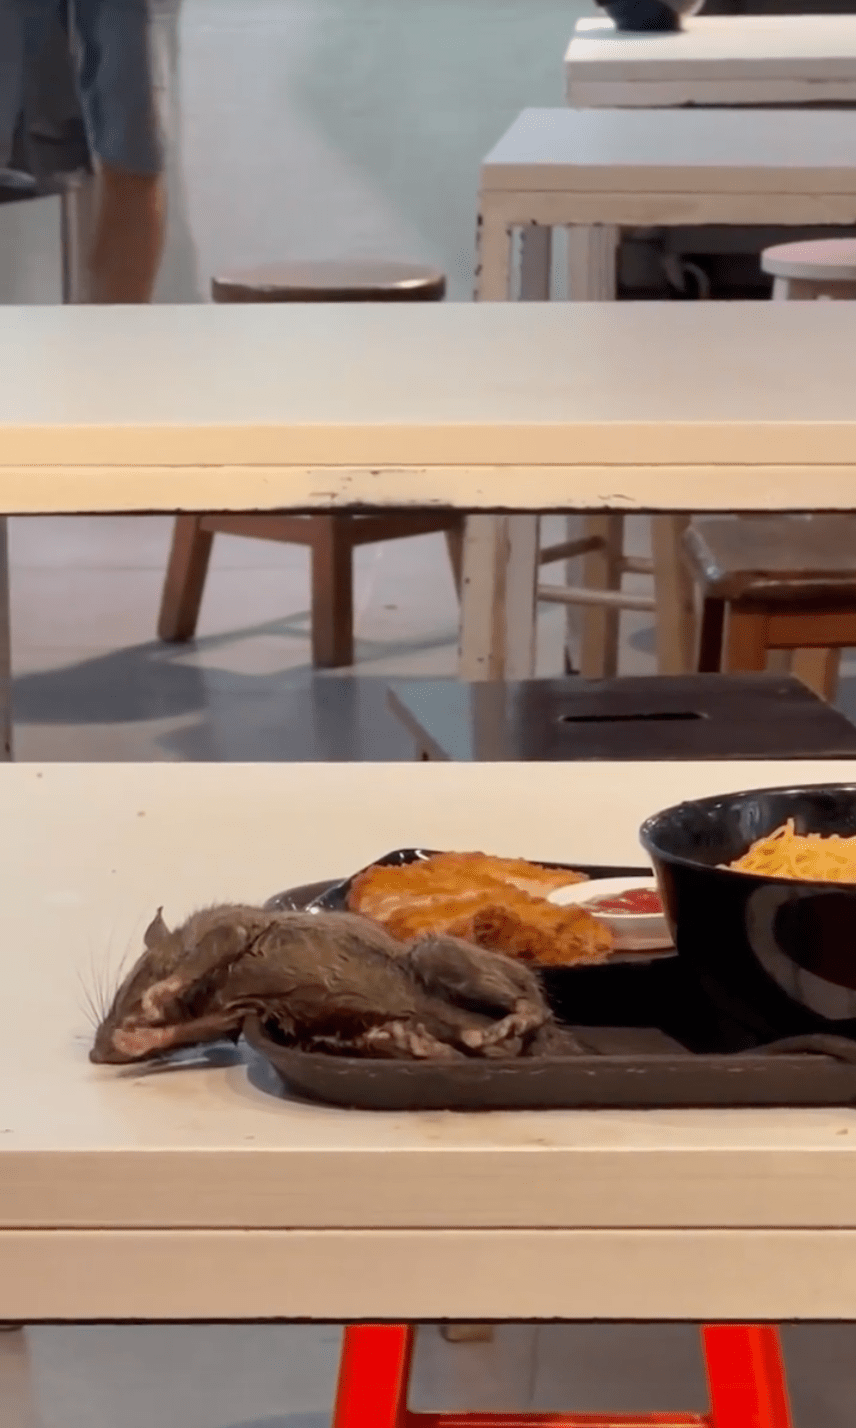 一隻手掌大小的乾瘦老鼠躺在食客的餐盤之上。